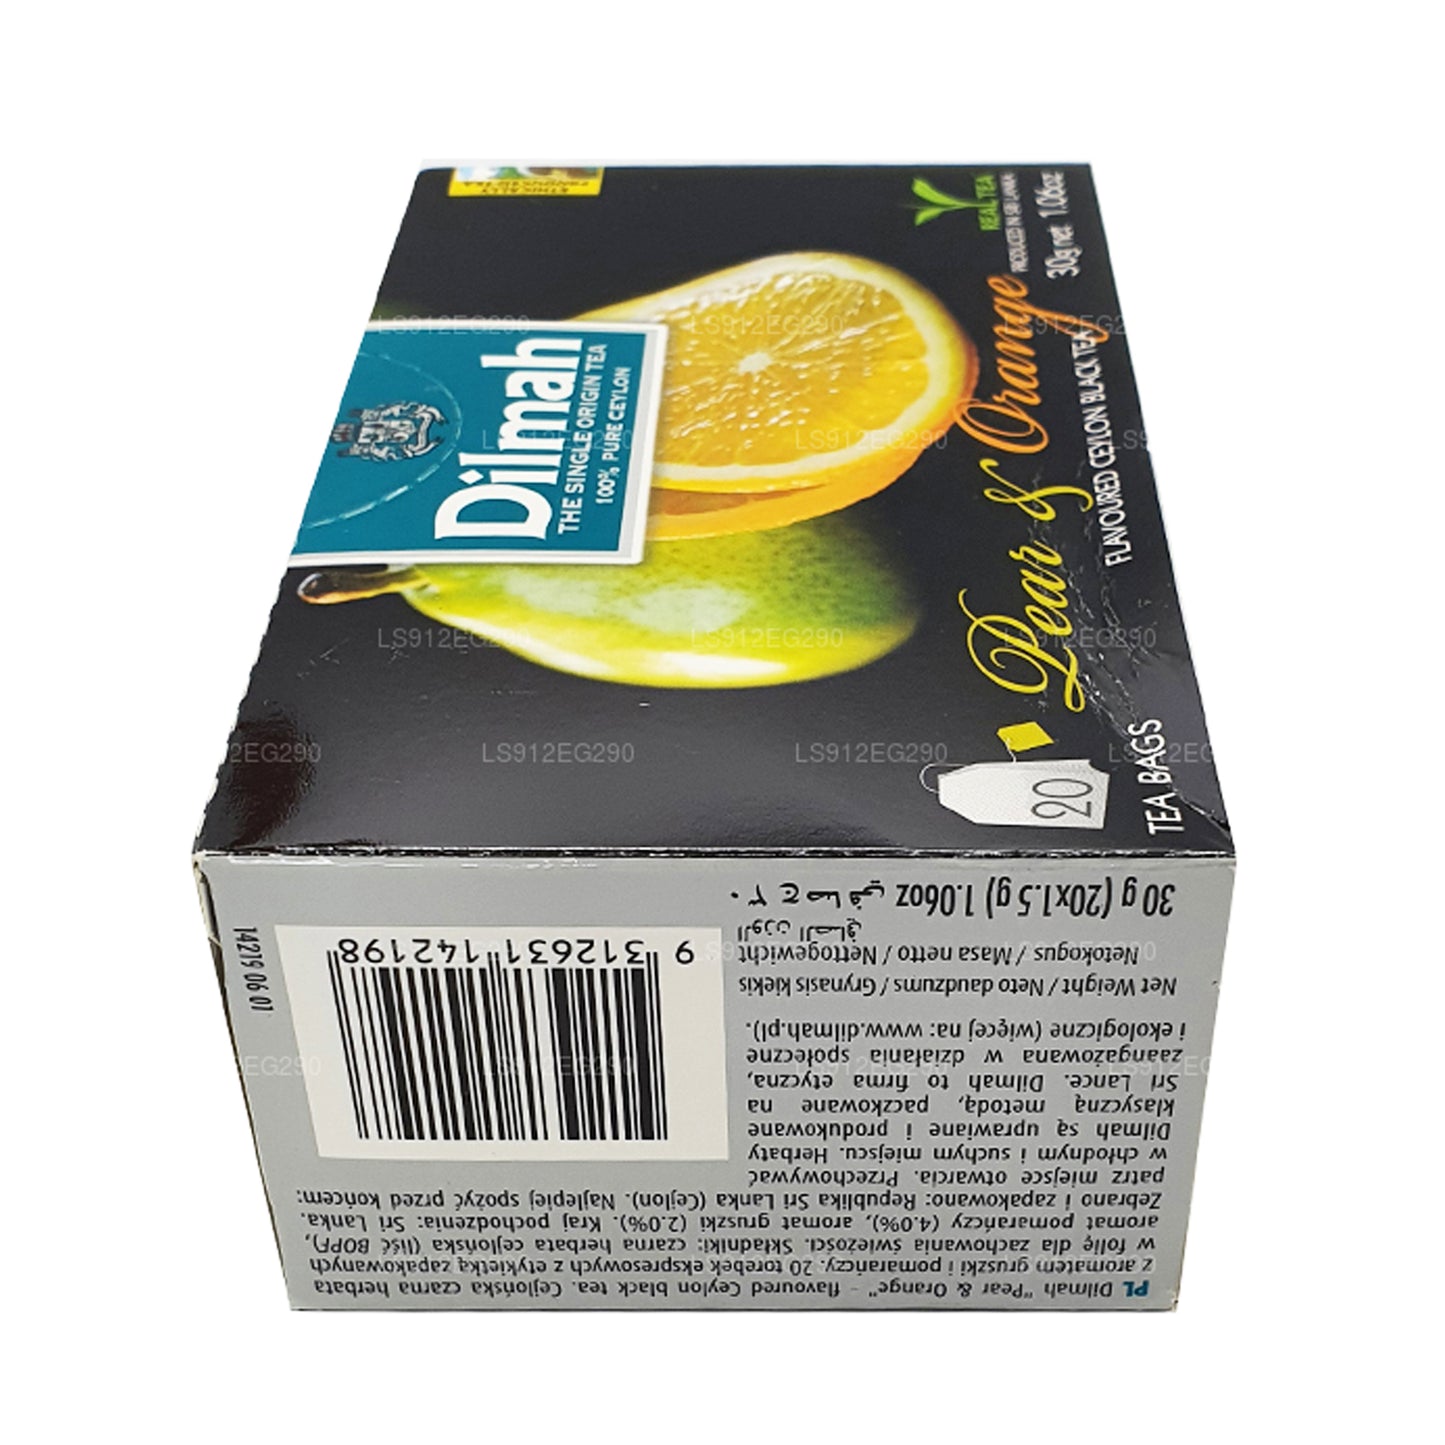 شاي السيلاني الأسود بنكهة الكمثرى والبرتقال من ديلما (30 جم) 20 كيس شاي